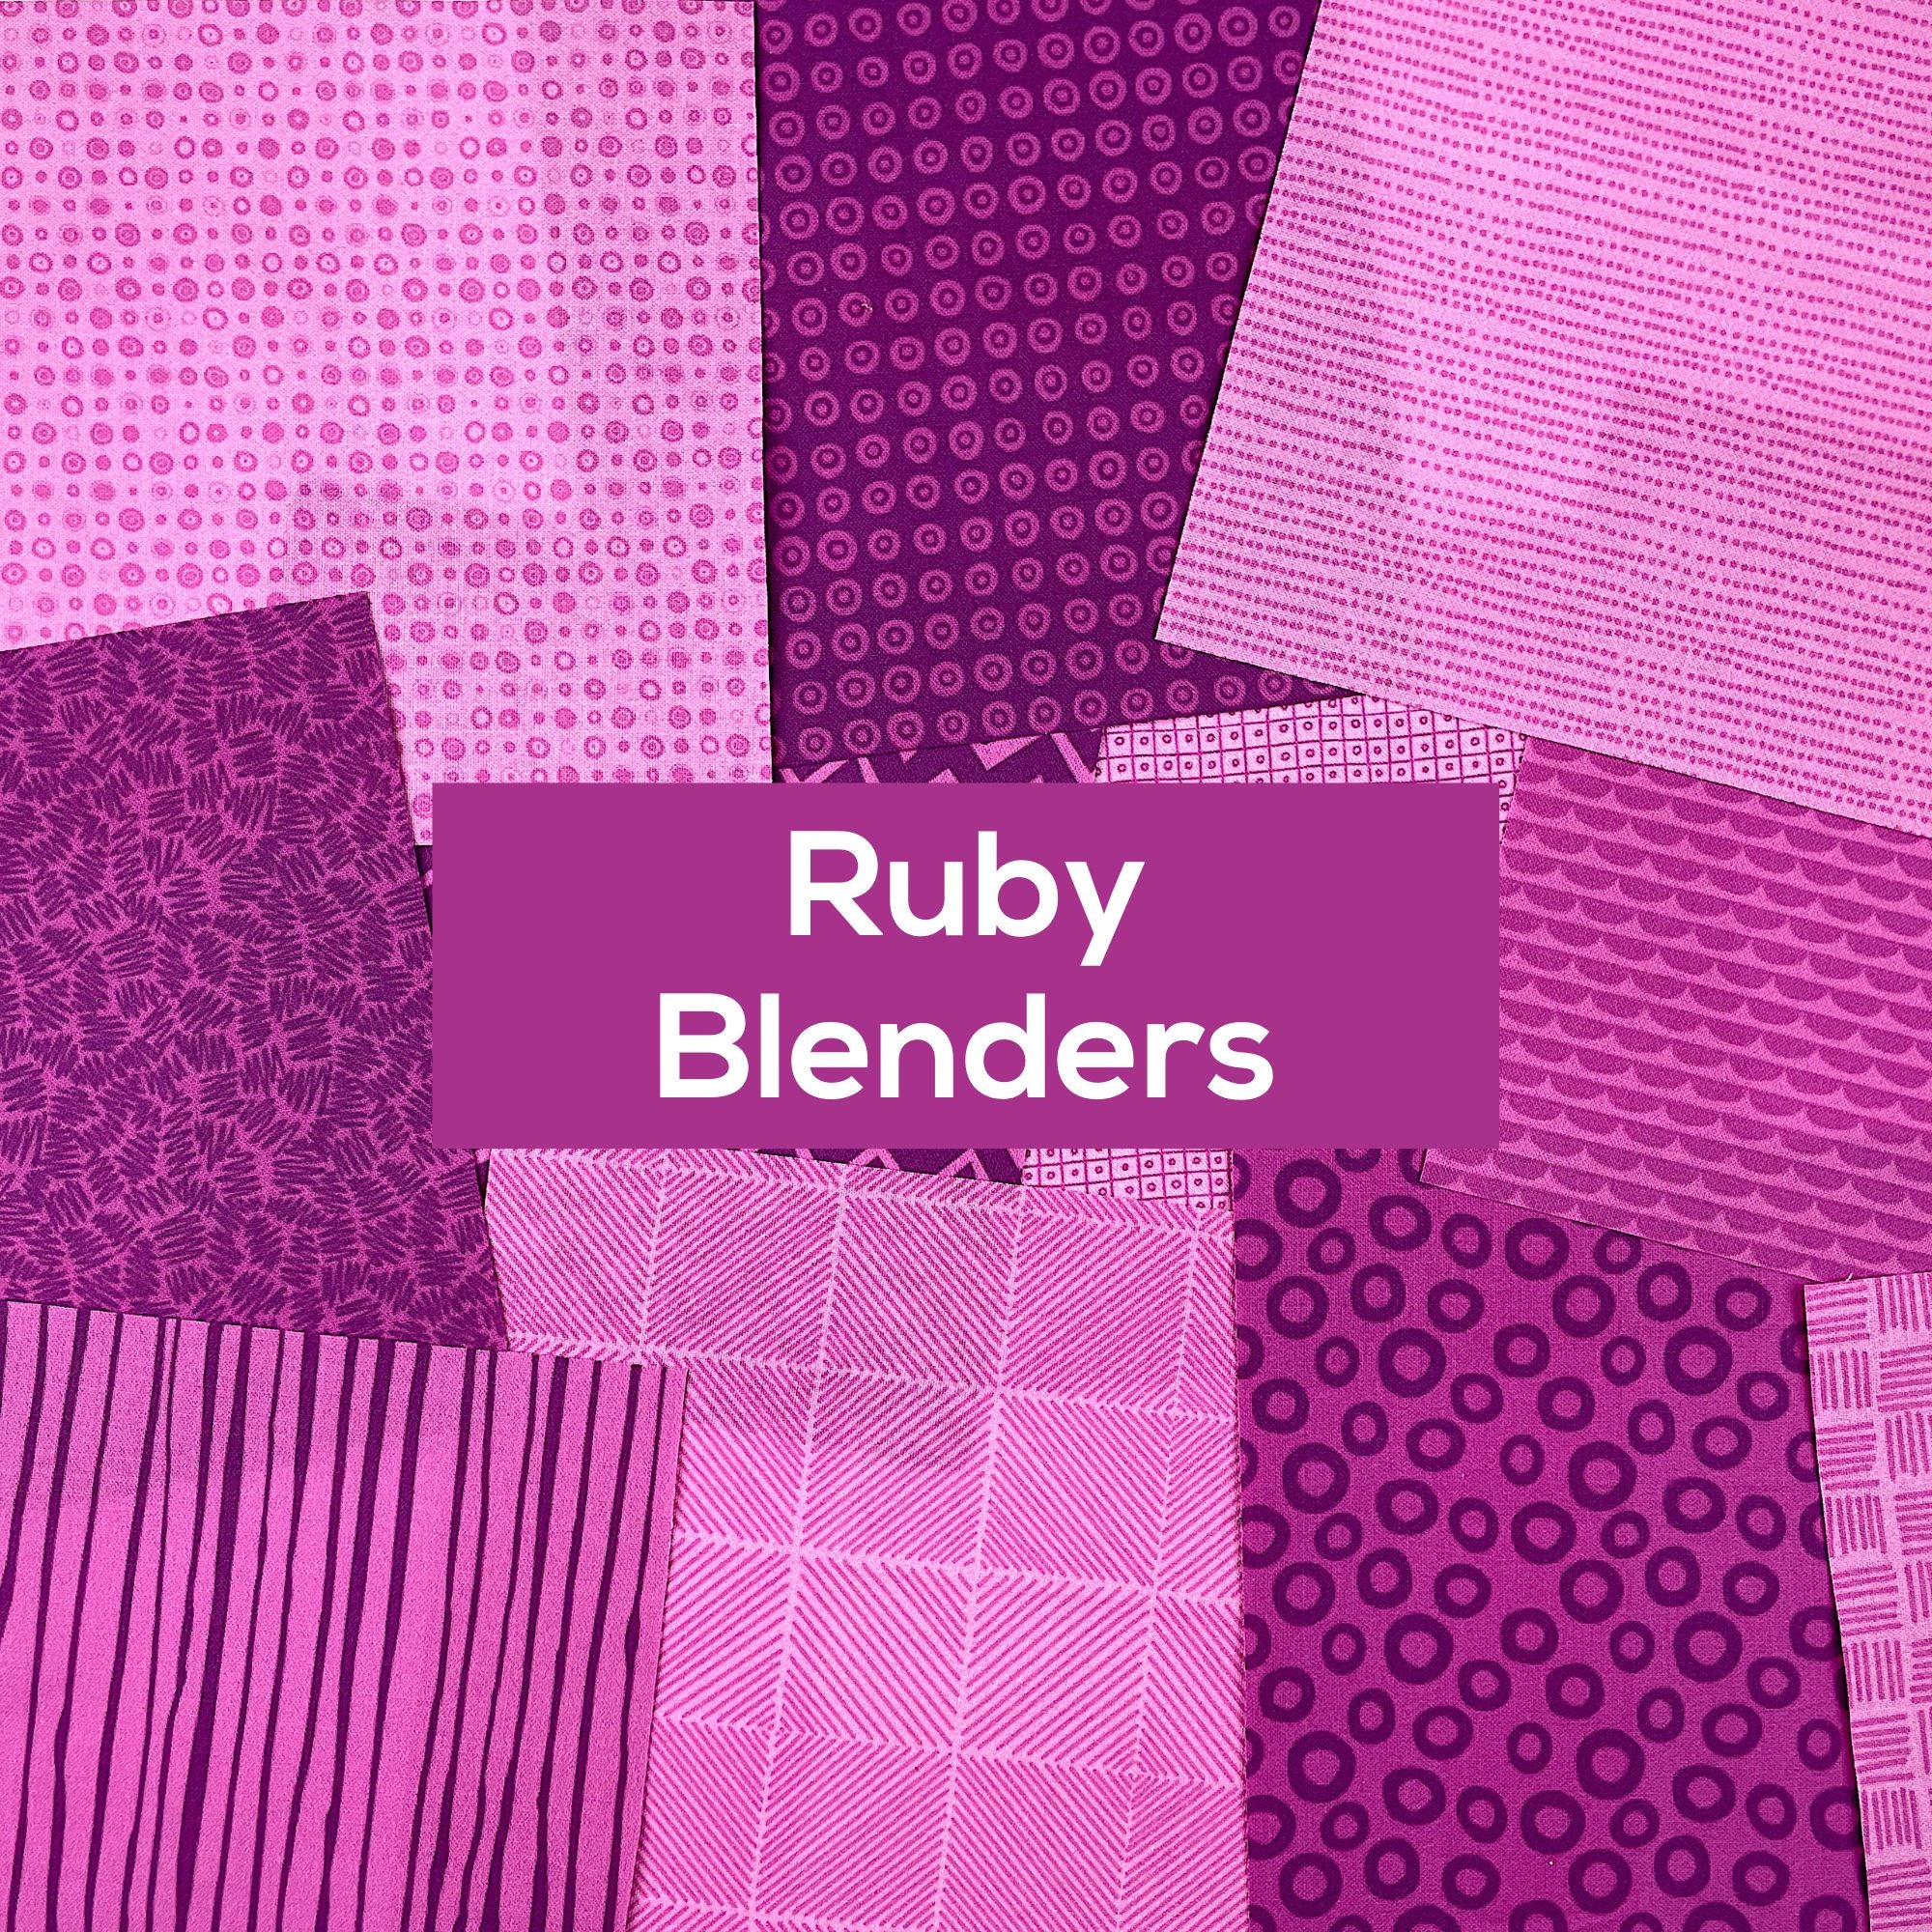 Ruby Blenders